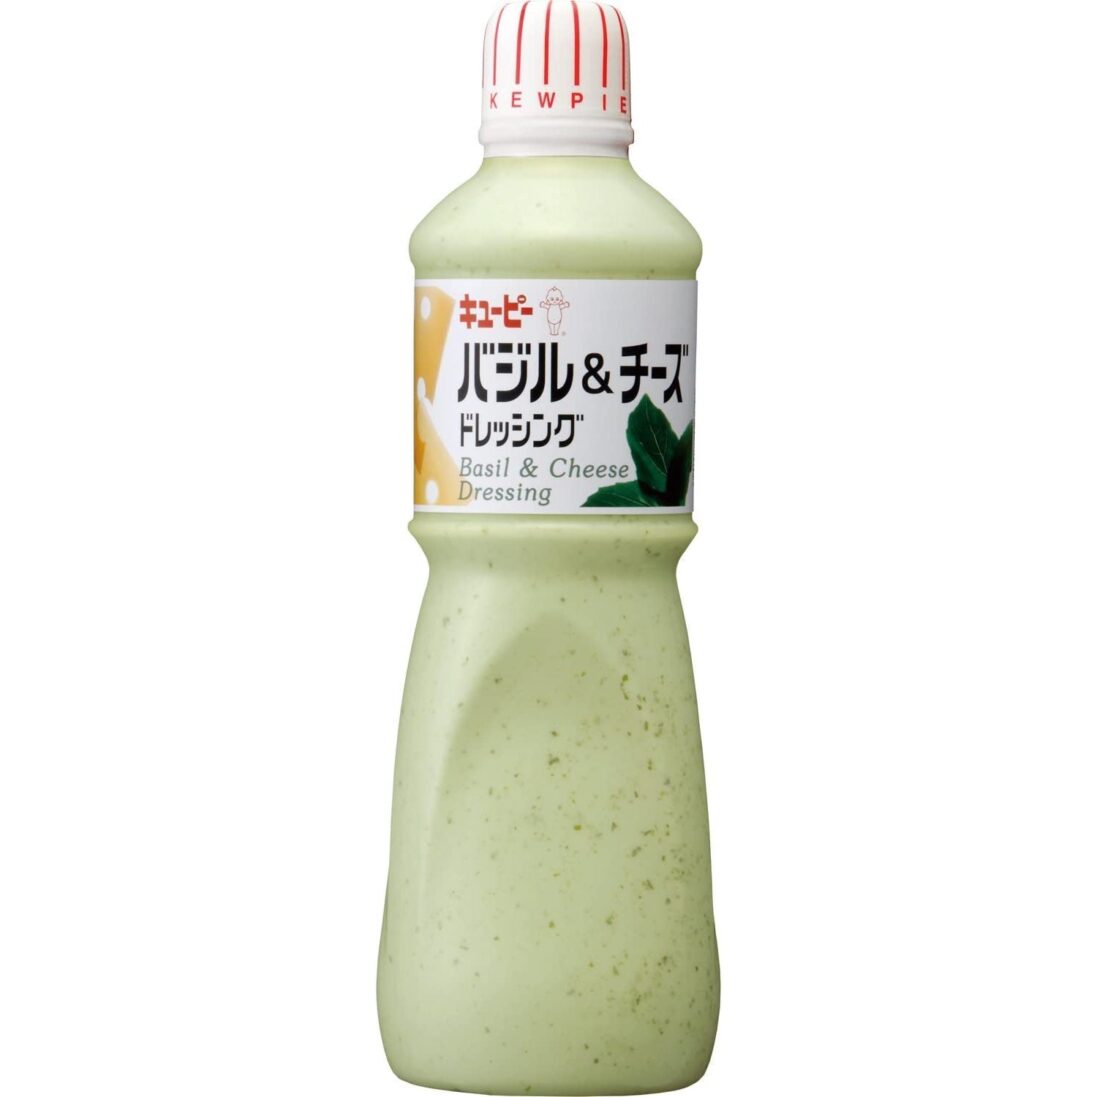 Kewpie-Basil-Cheese-Dressing-1000ml-Japanese-Taste_2048x.jpg